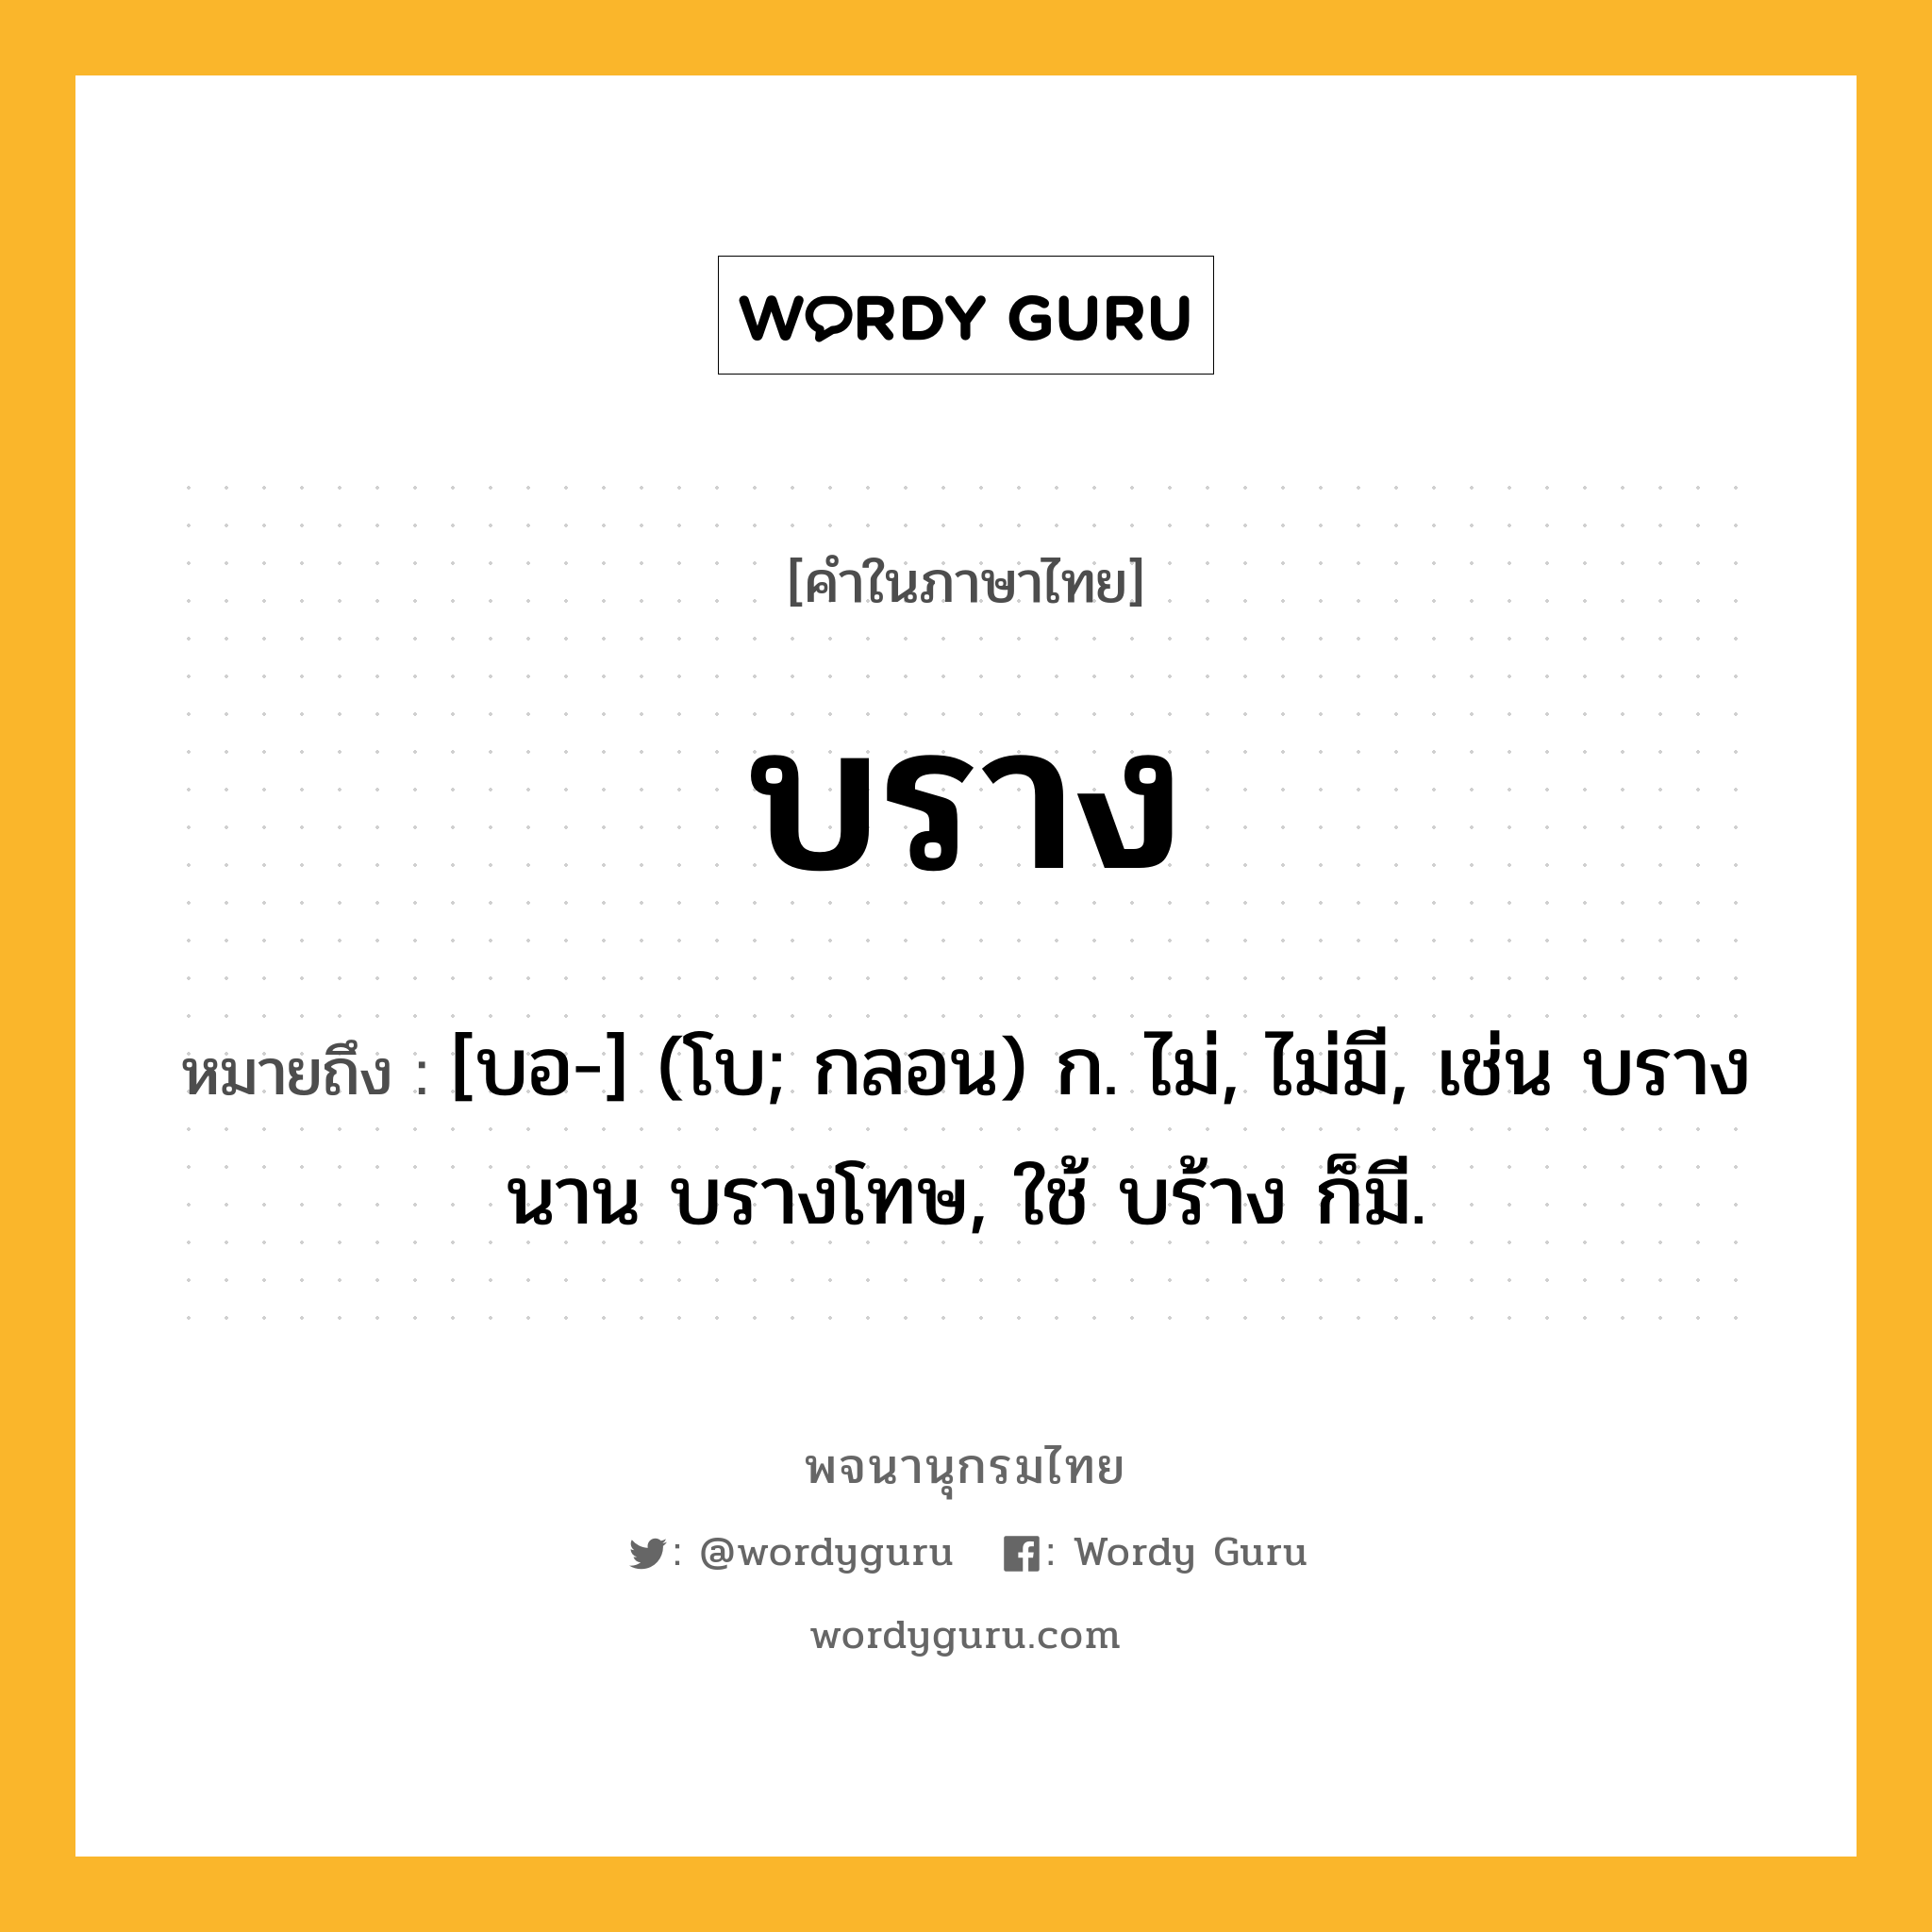 บราง หมายถึงอะไร?, คำในภาษาไทย บราง หมายถึง [บอ-] (โบ; กลอน) ก. ไม่, ไม่มี, เช่น บรางนาน บรางโทษ, ใช้ บร้าง ก็มี.